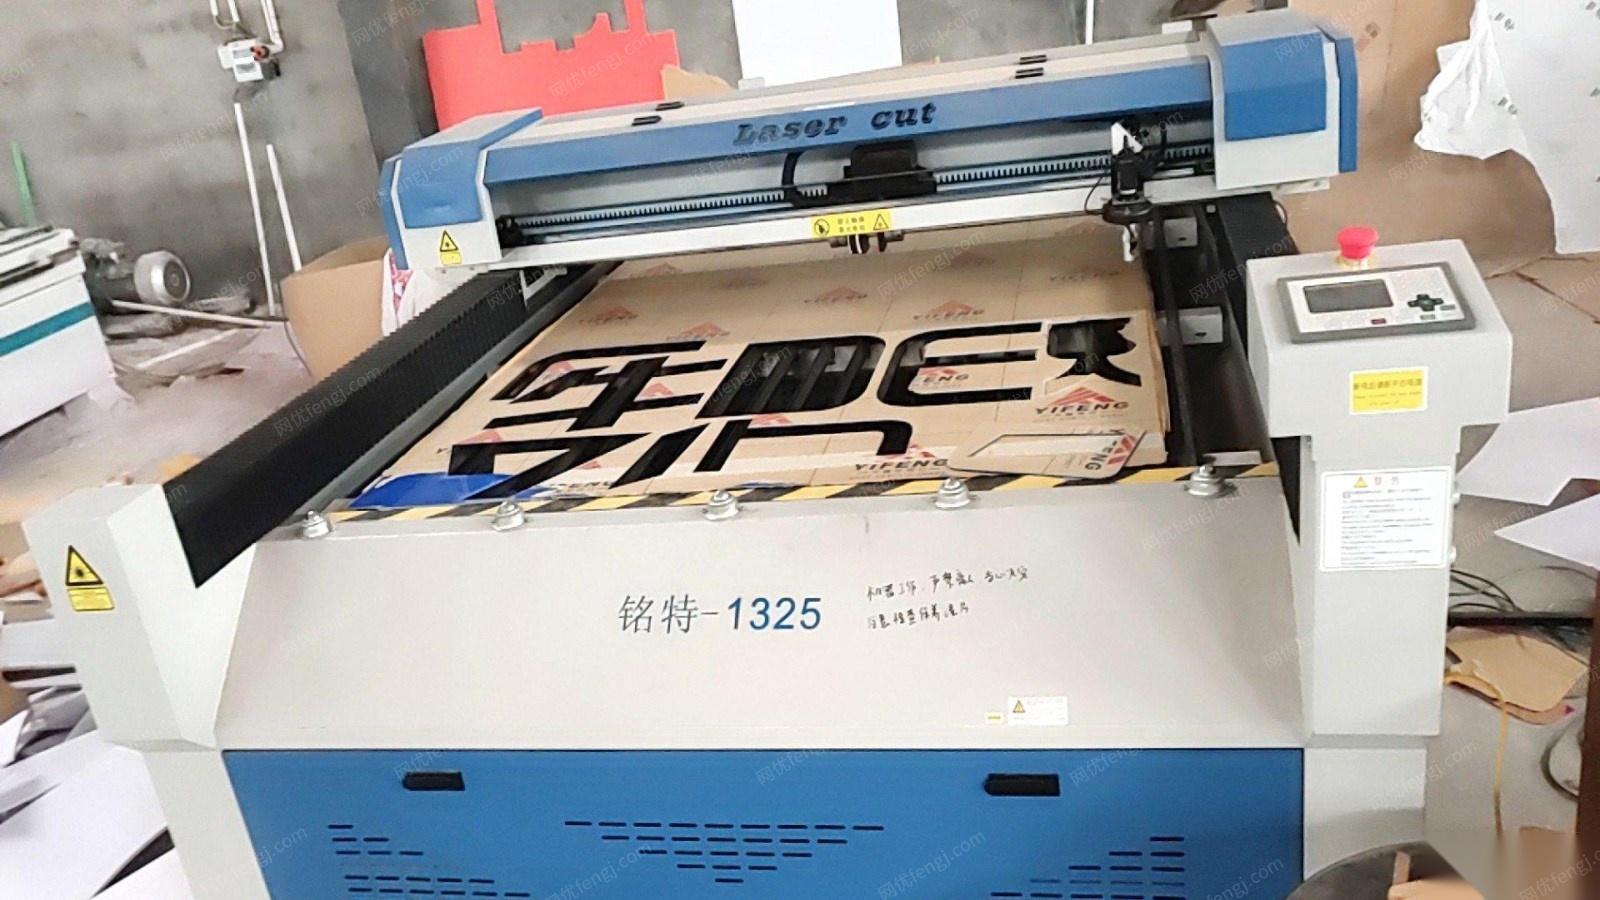 江西萍乡不做了低价转让广告喷绘字牌雕刻设备2台写真,1台喷绘机,1雕刻机,1台激光机,1台巡边机等   打包价500000元 可议价.